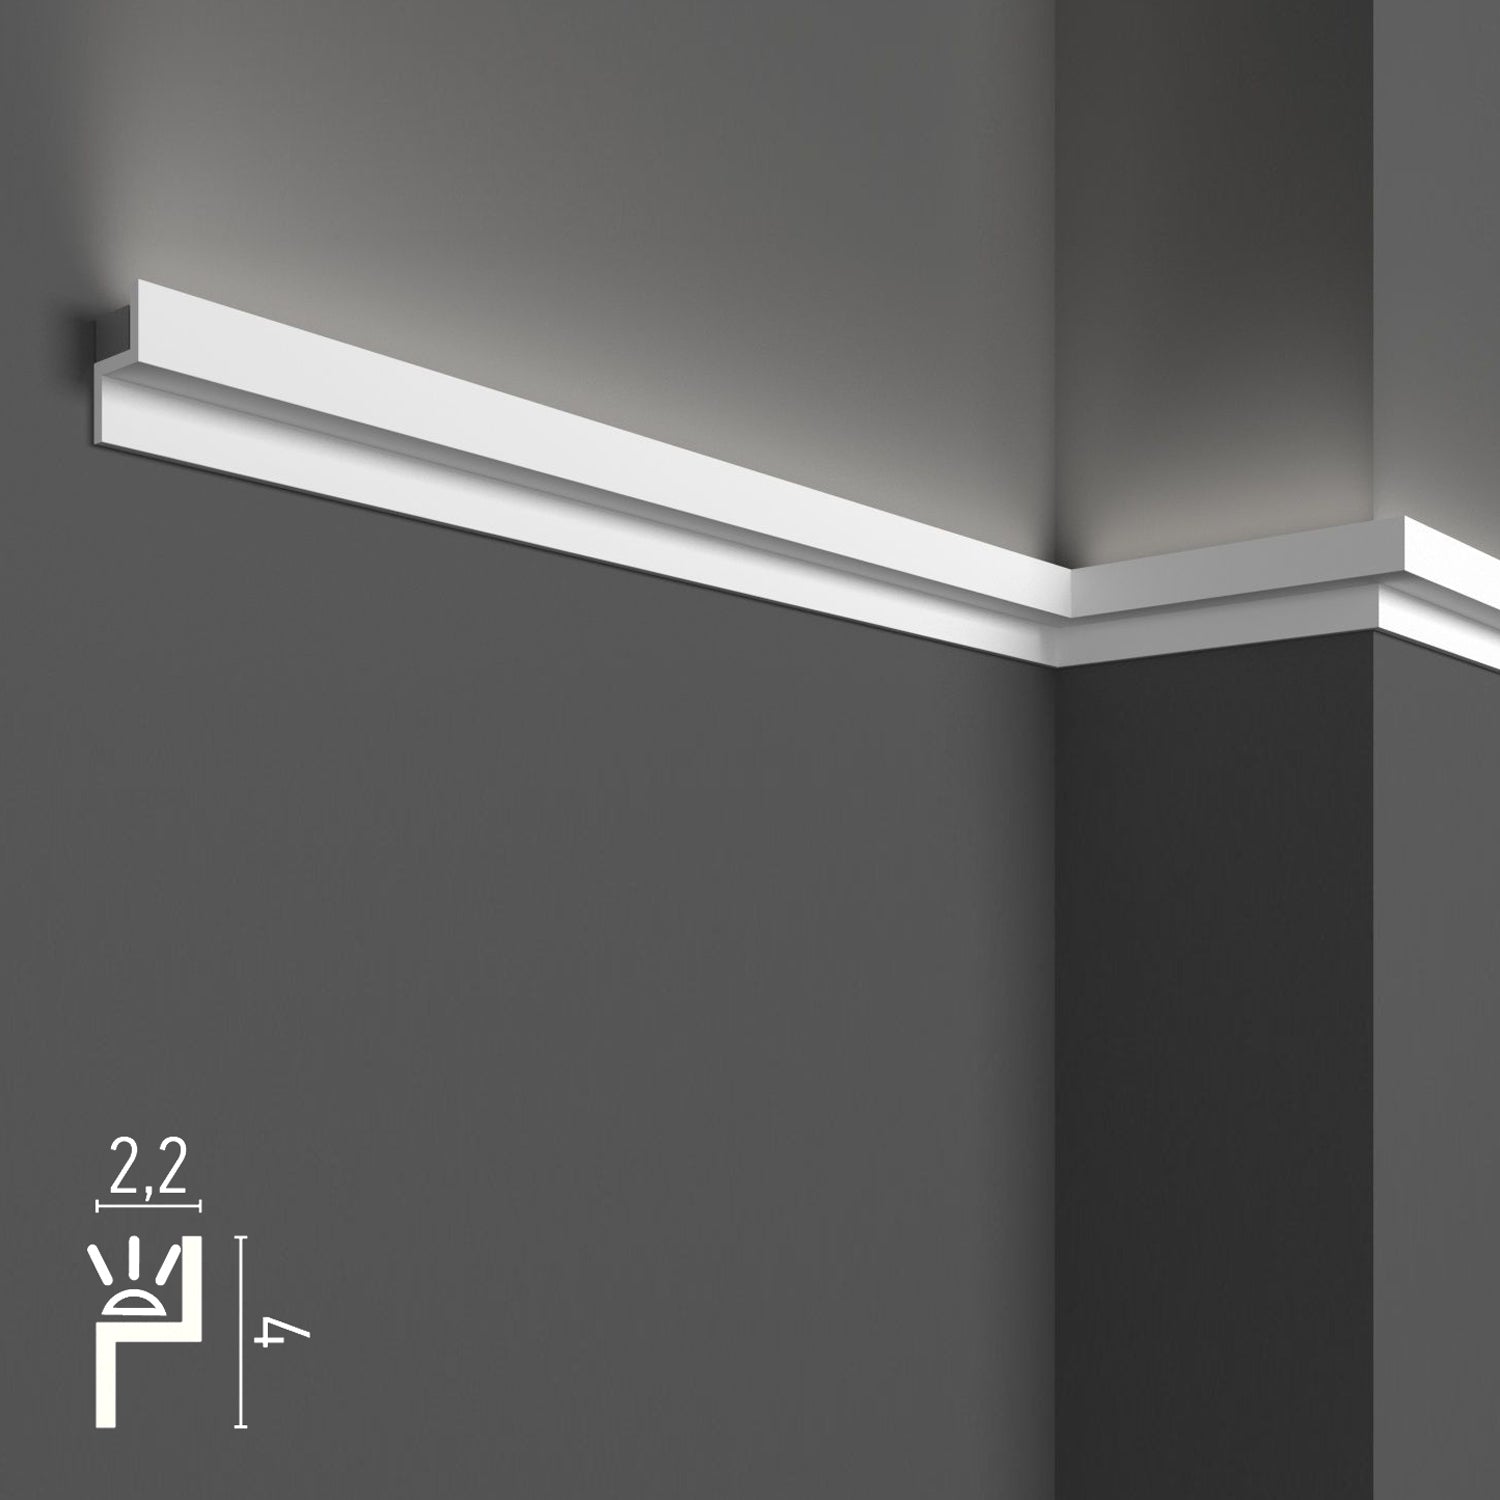 KH902 da 2 metri - Cornici velette per led a soffitto e parete, per illuminazione indiretta con le strisce led